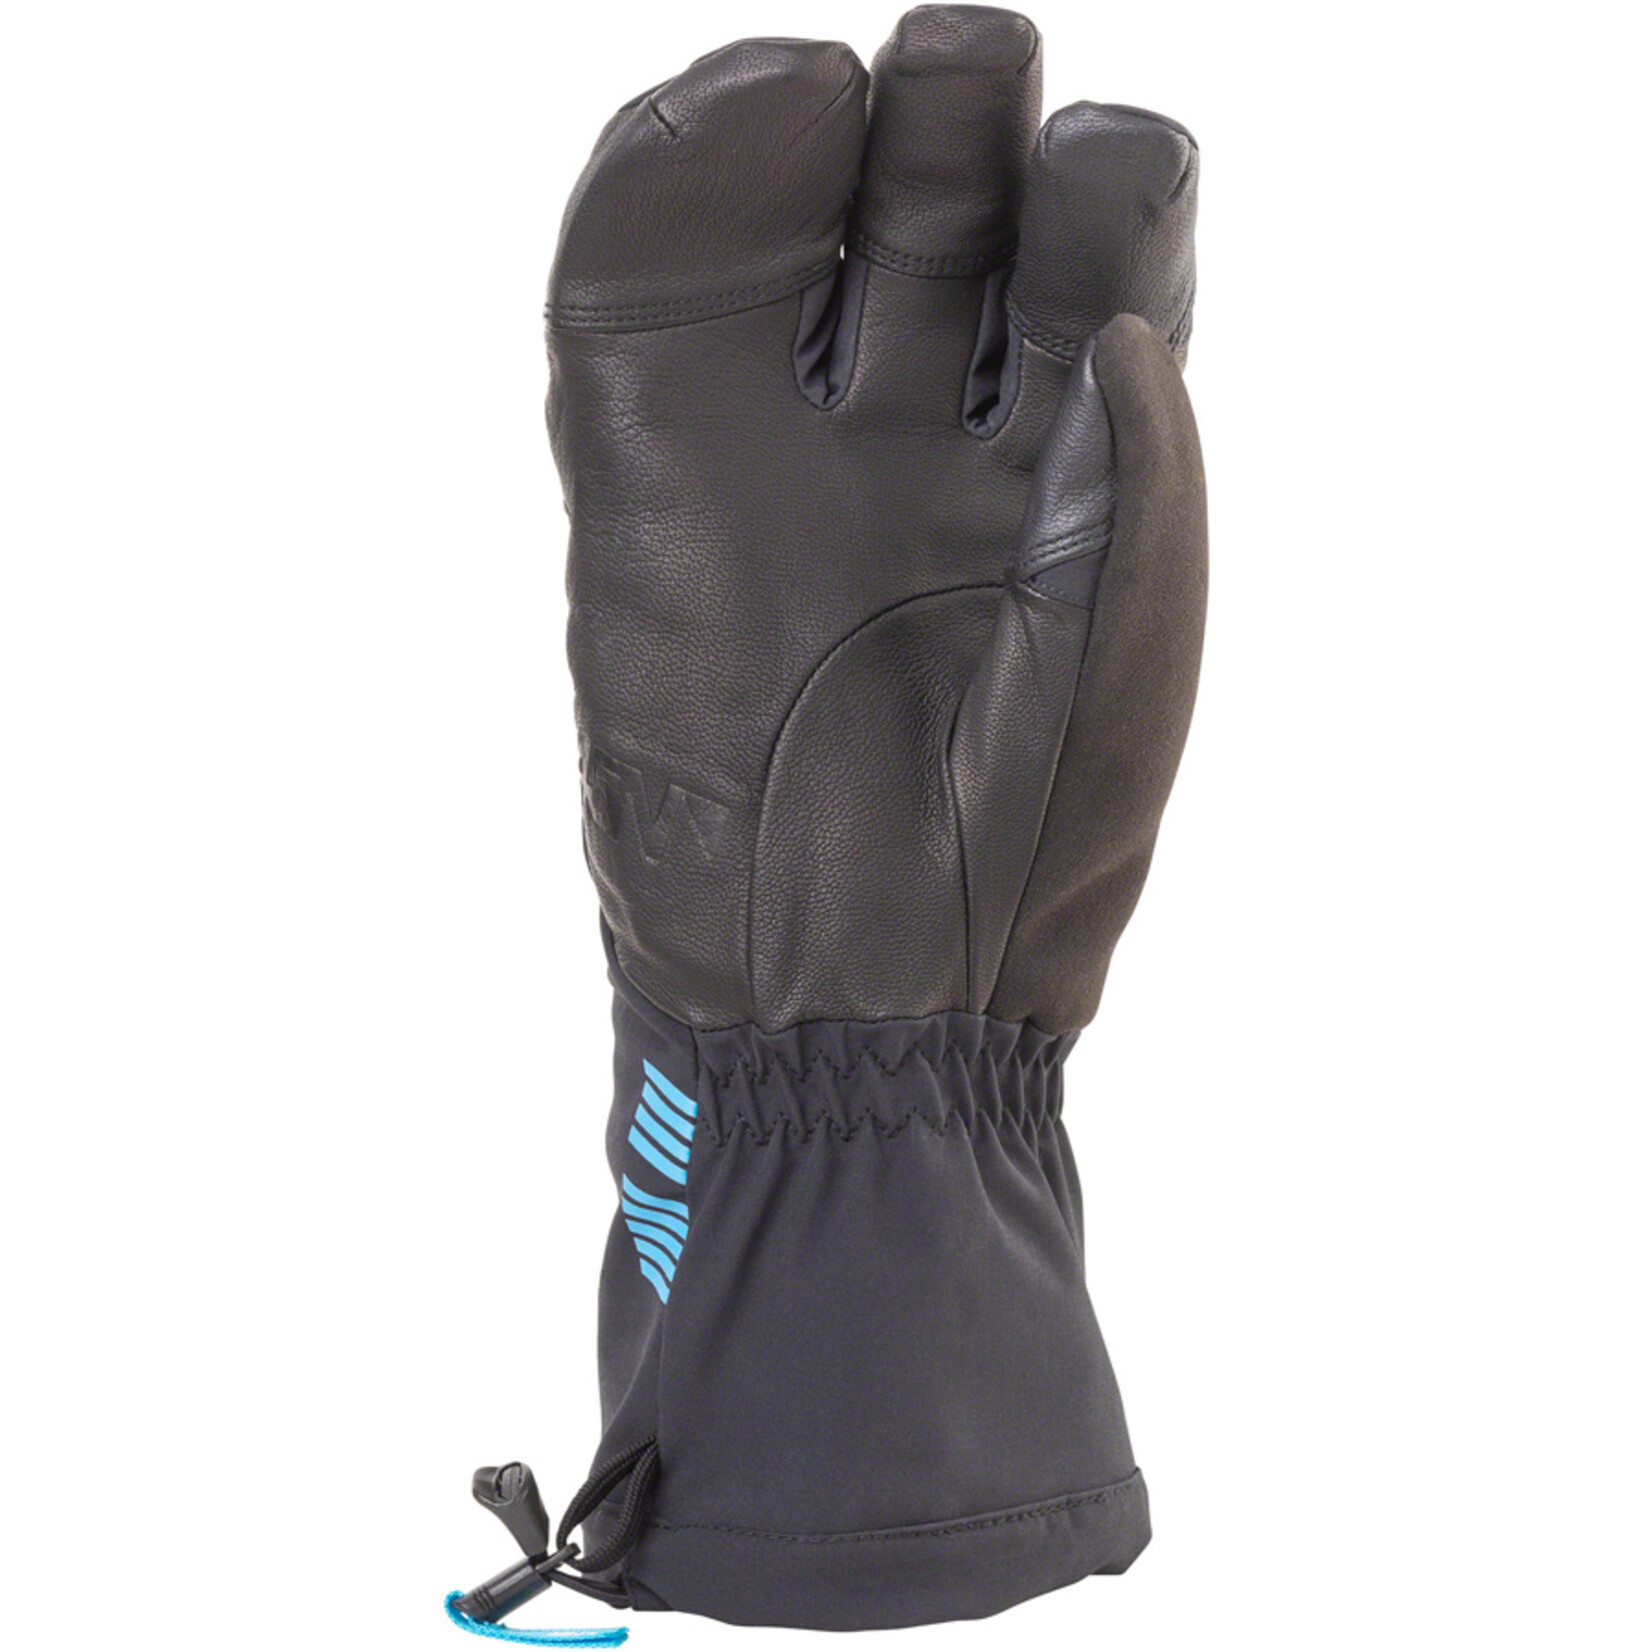 45NRTH 45NRTH Sturmfist 4 Finger Glove - Black, Full Finger, X-Large (10)